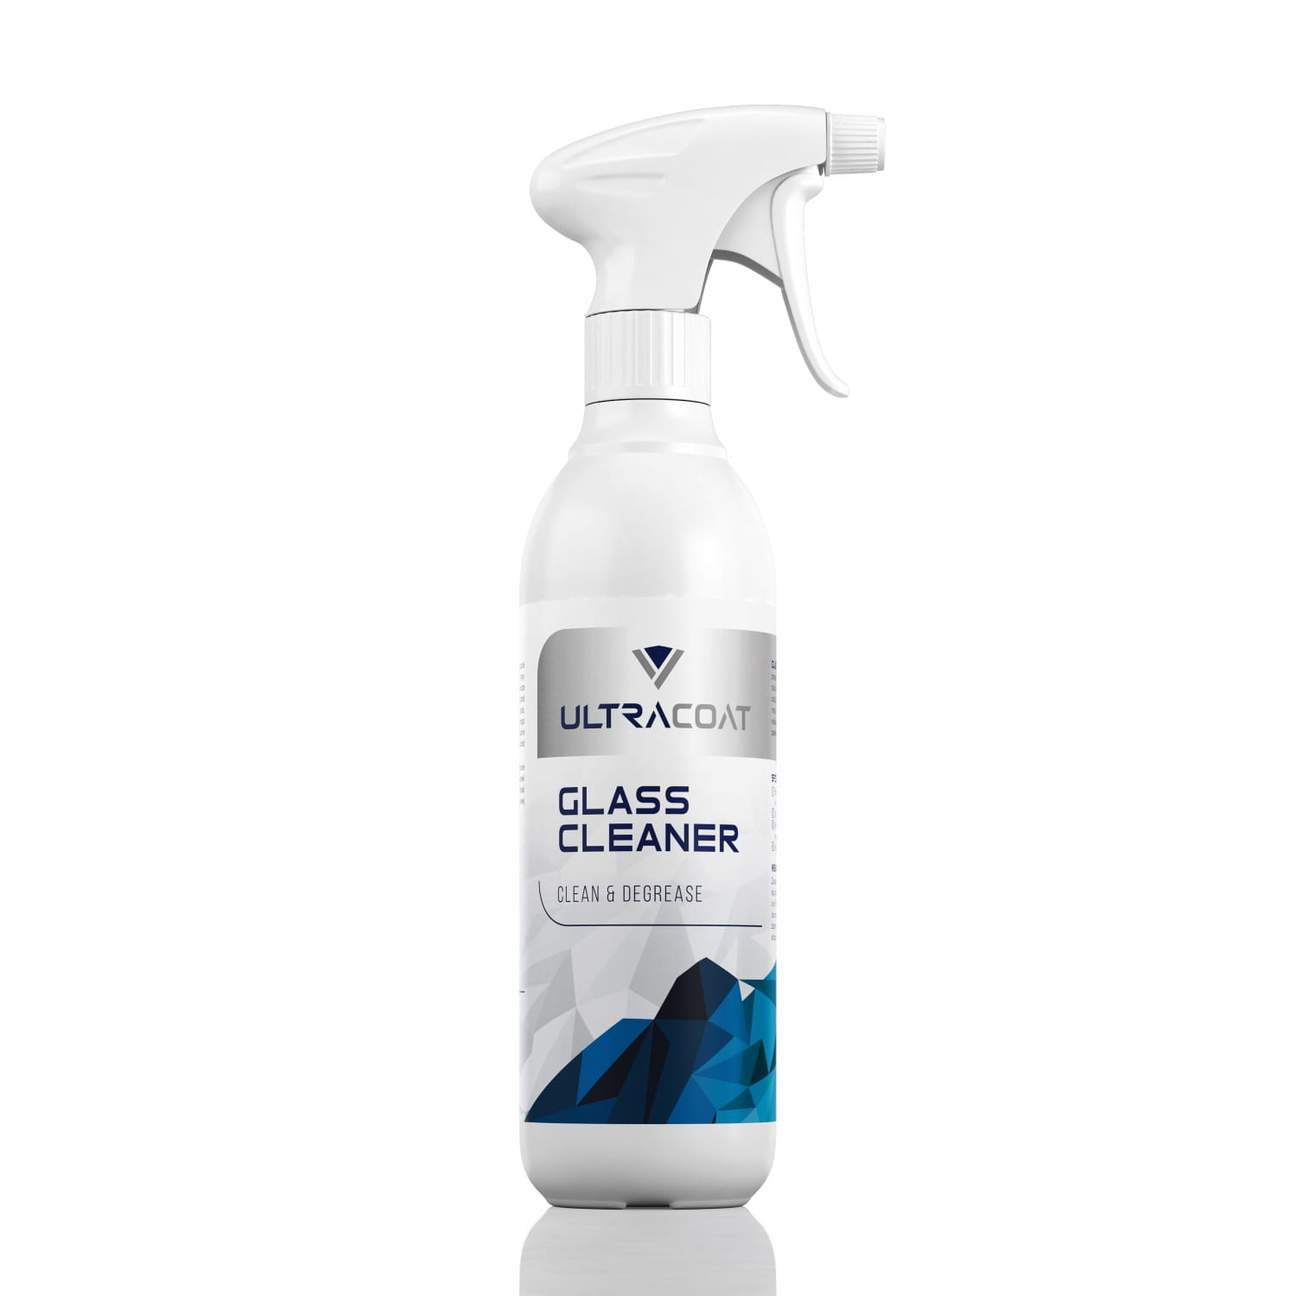 UltraCoat Glass Cleaner - Pulitore e Sgrassatore Vetri Senza Striature